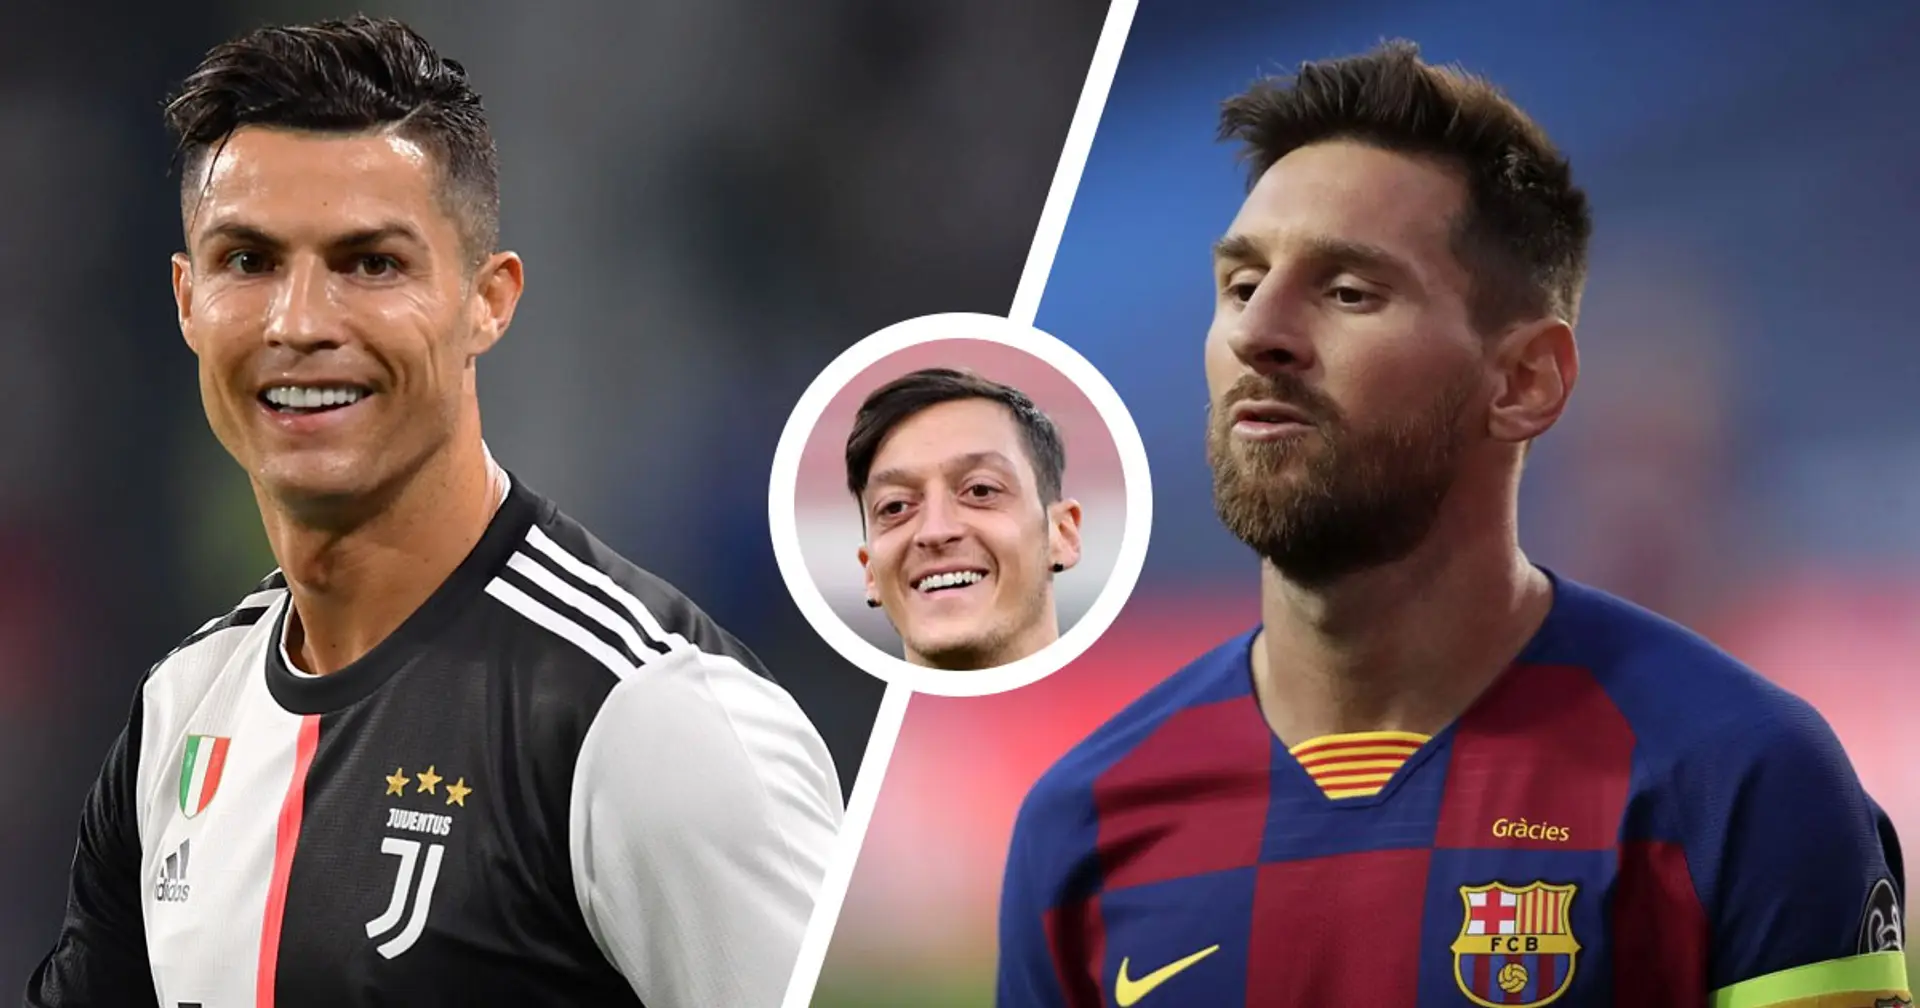 "Messi è il migliore in Spagna, Ronaldo il migliore ovunque": Ozil strizza ancora l'occhio a CR7 e alla Juve